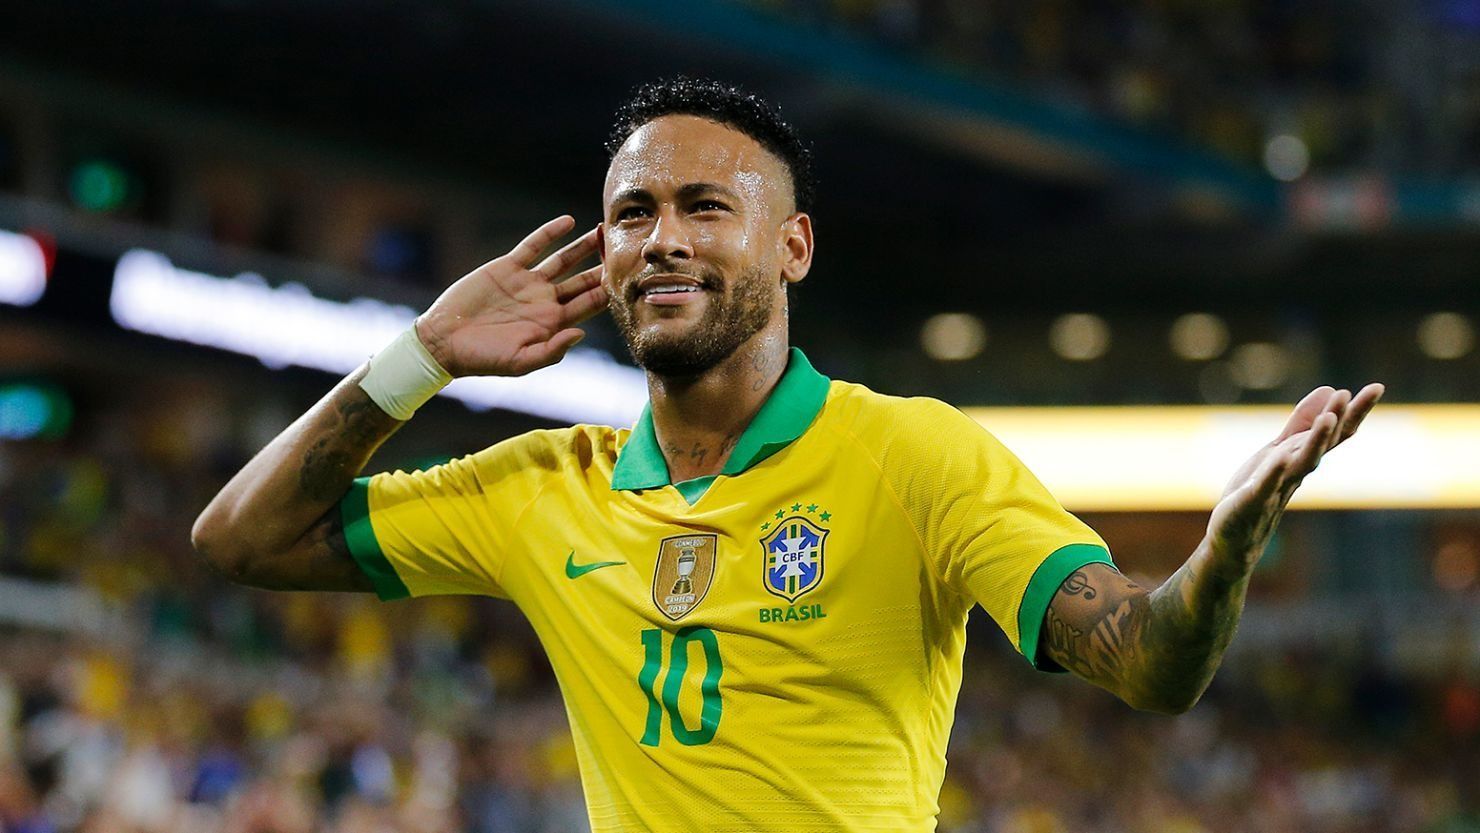 La recuperación de Neymar va más rápido de lo esperado